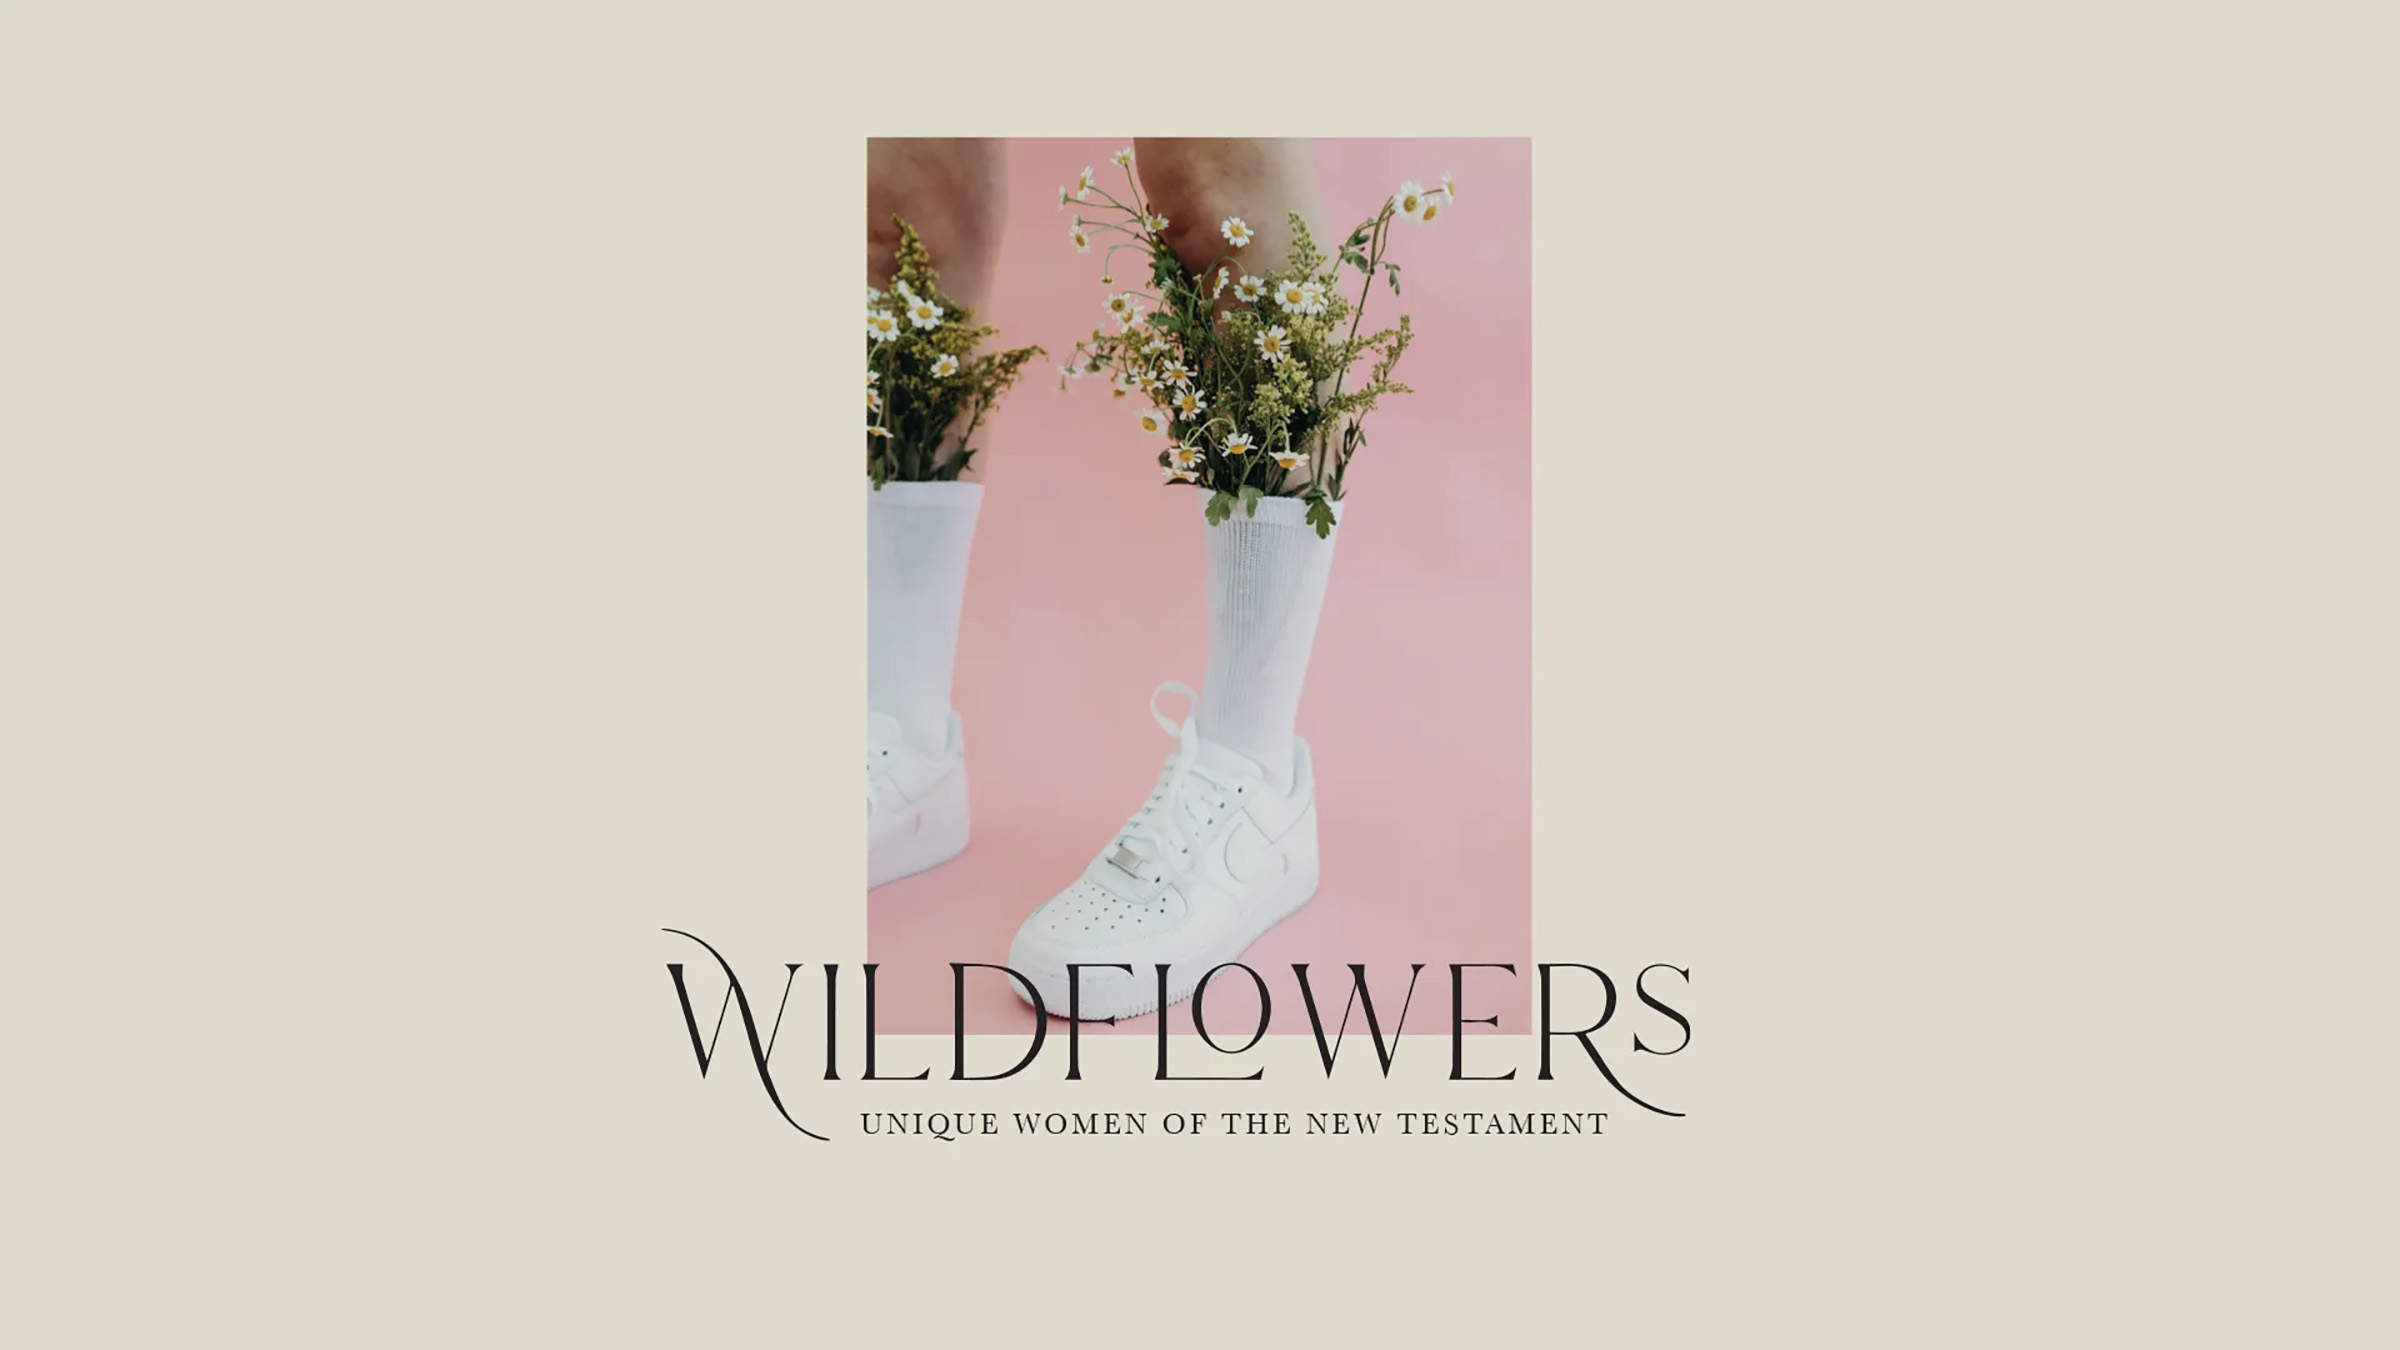 Sheologie Wildflowers Series, 2021